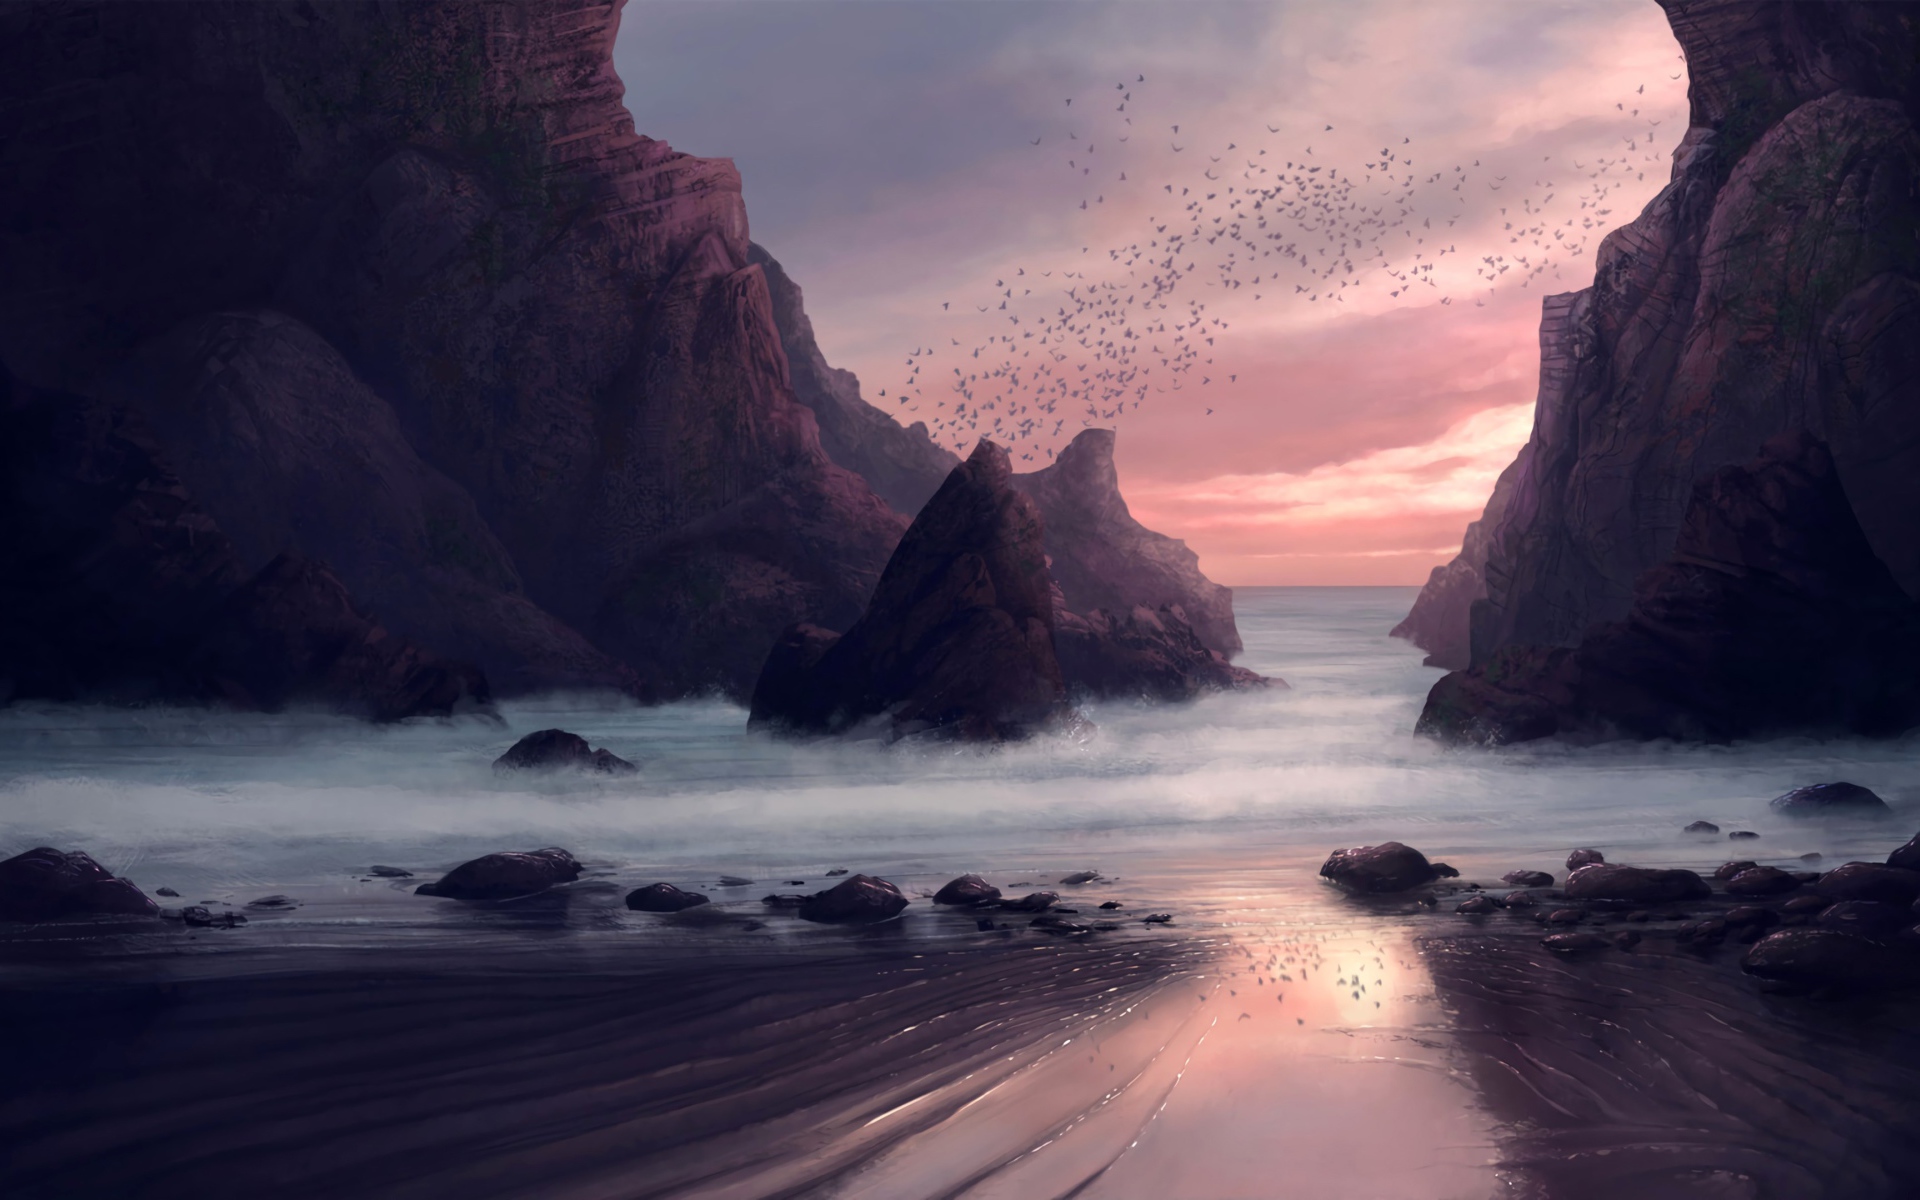 Стая птиц пролетает над скалами у моря 